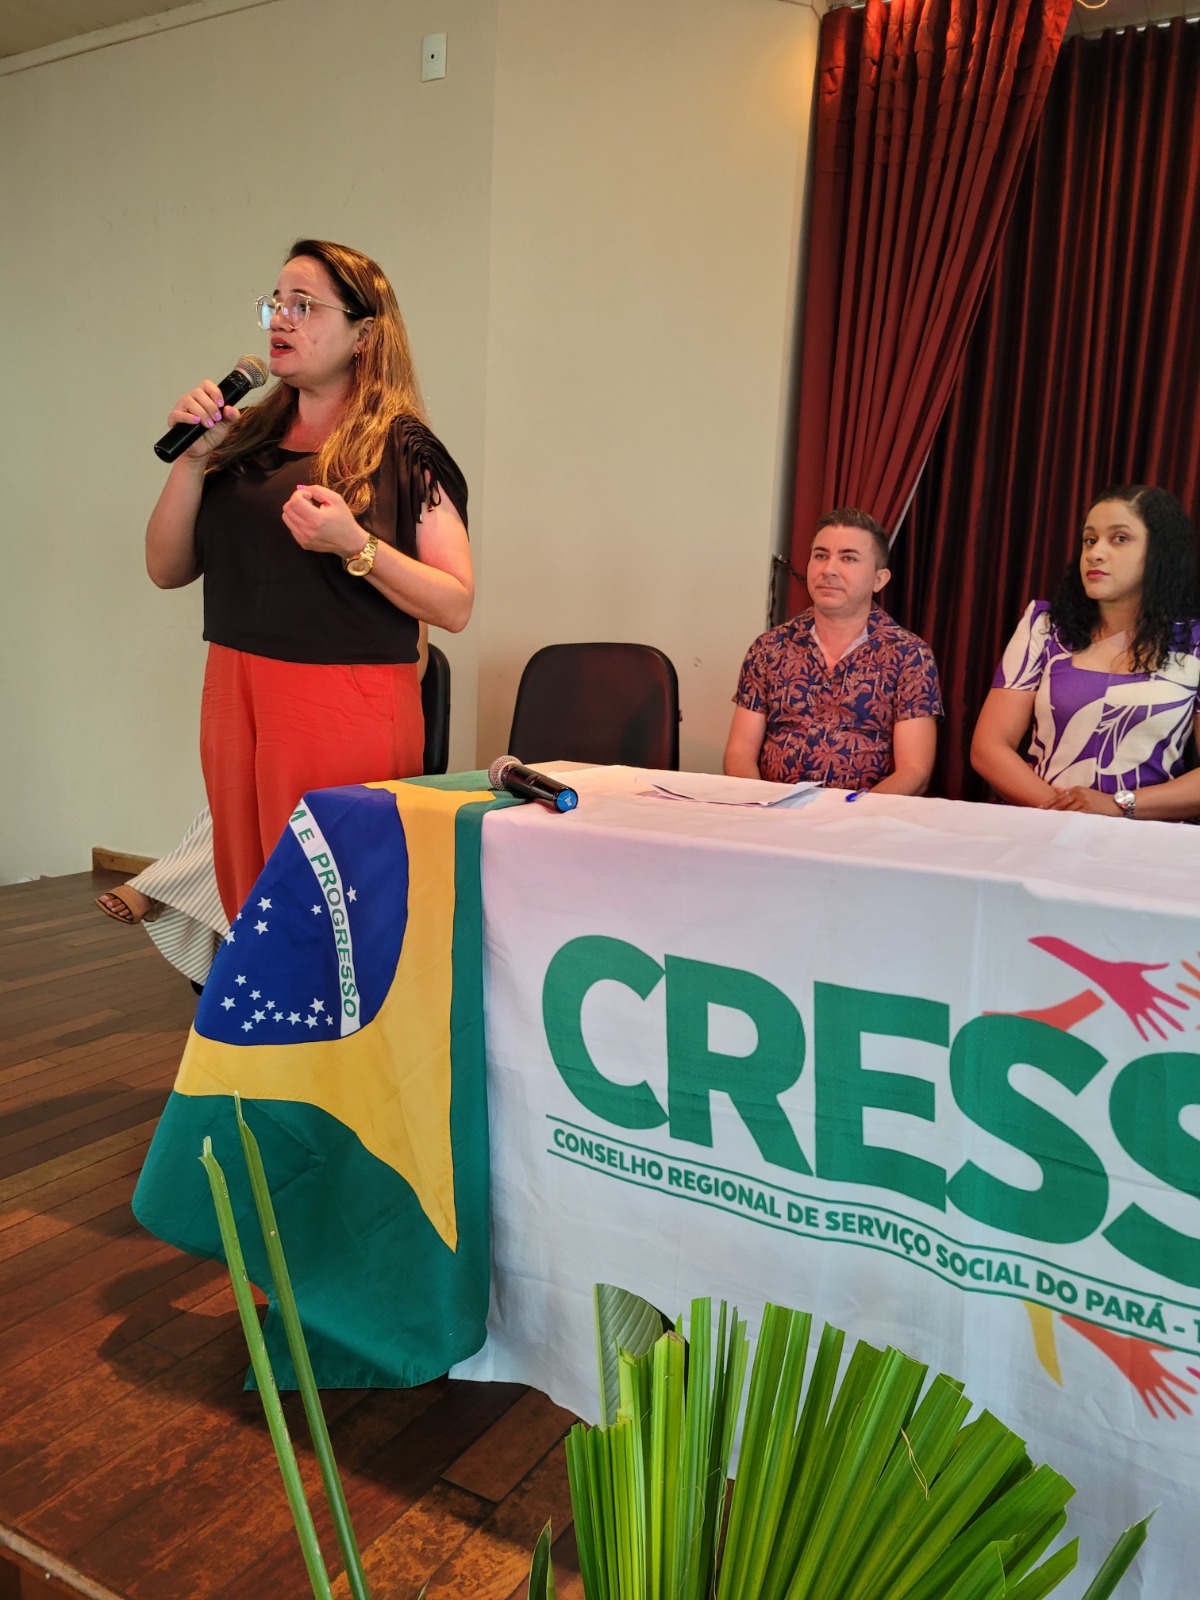 Cress/PA - 1ª Região - Informe CRESS Pará #Descriçãodaimagem